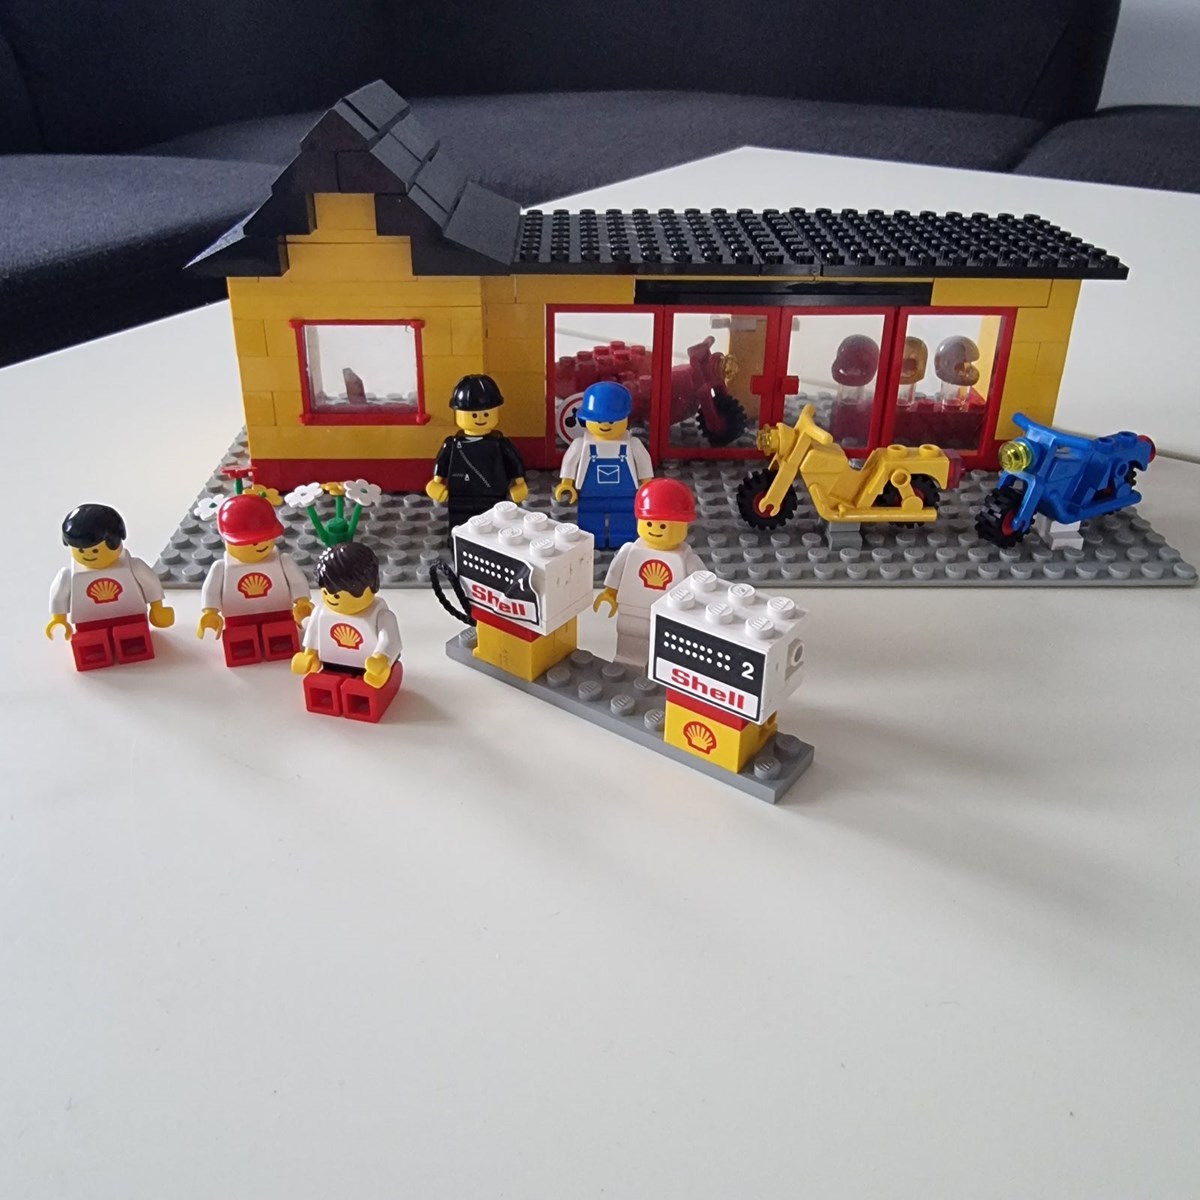 Lego City er populært hos de mindste, og disse figurer kan blive dine for 150 kroner. Du kan hente dem hos Torben i Kolding.